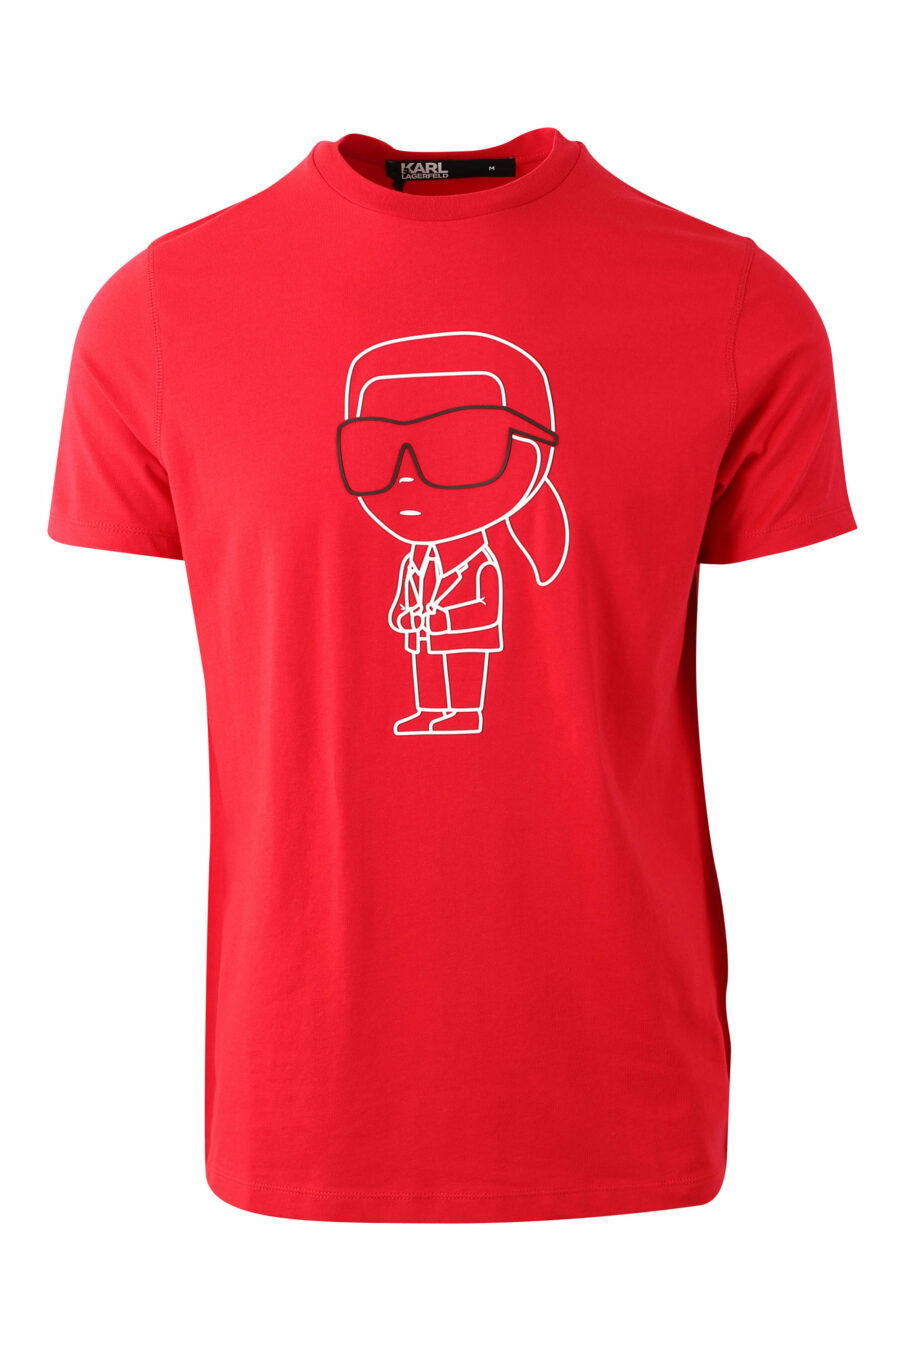 Camiseta roja con maxilogo "karl" silueta - IMG 0048